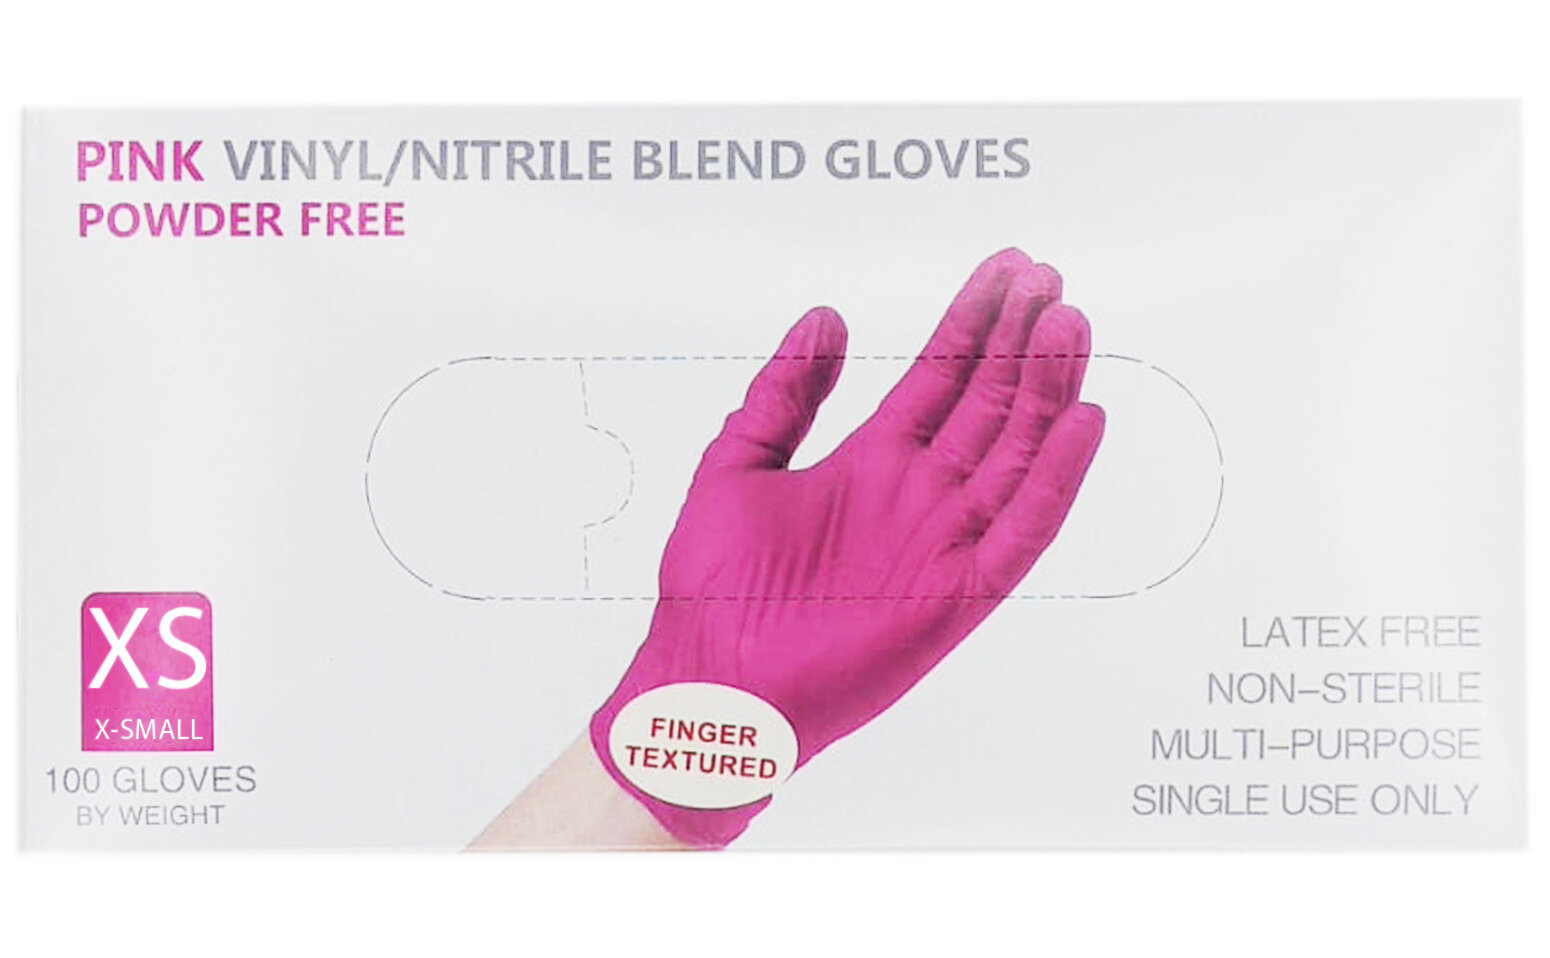 Нитрило-виниловые одноразовые неопудренные перчатки, текстурир-е пальцы, розовые, 100 штук (50 пар), XS